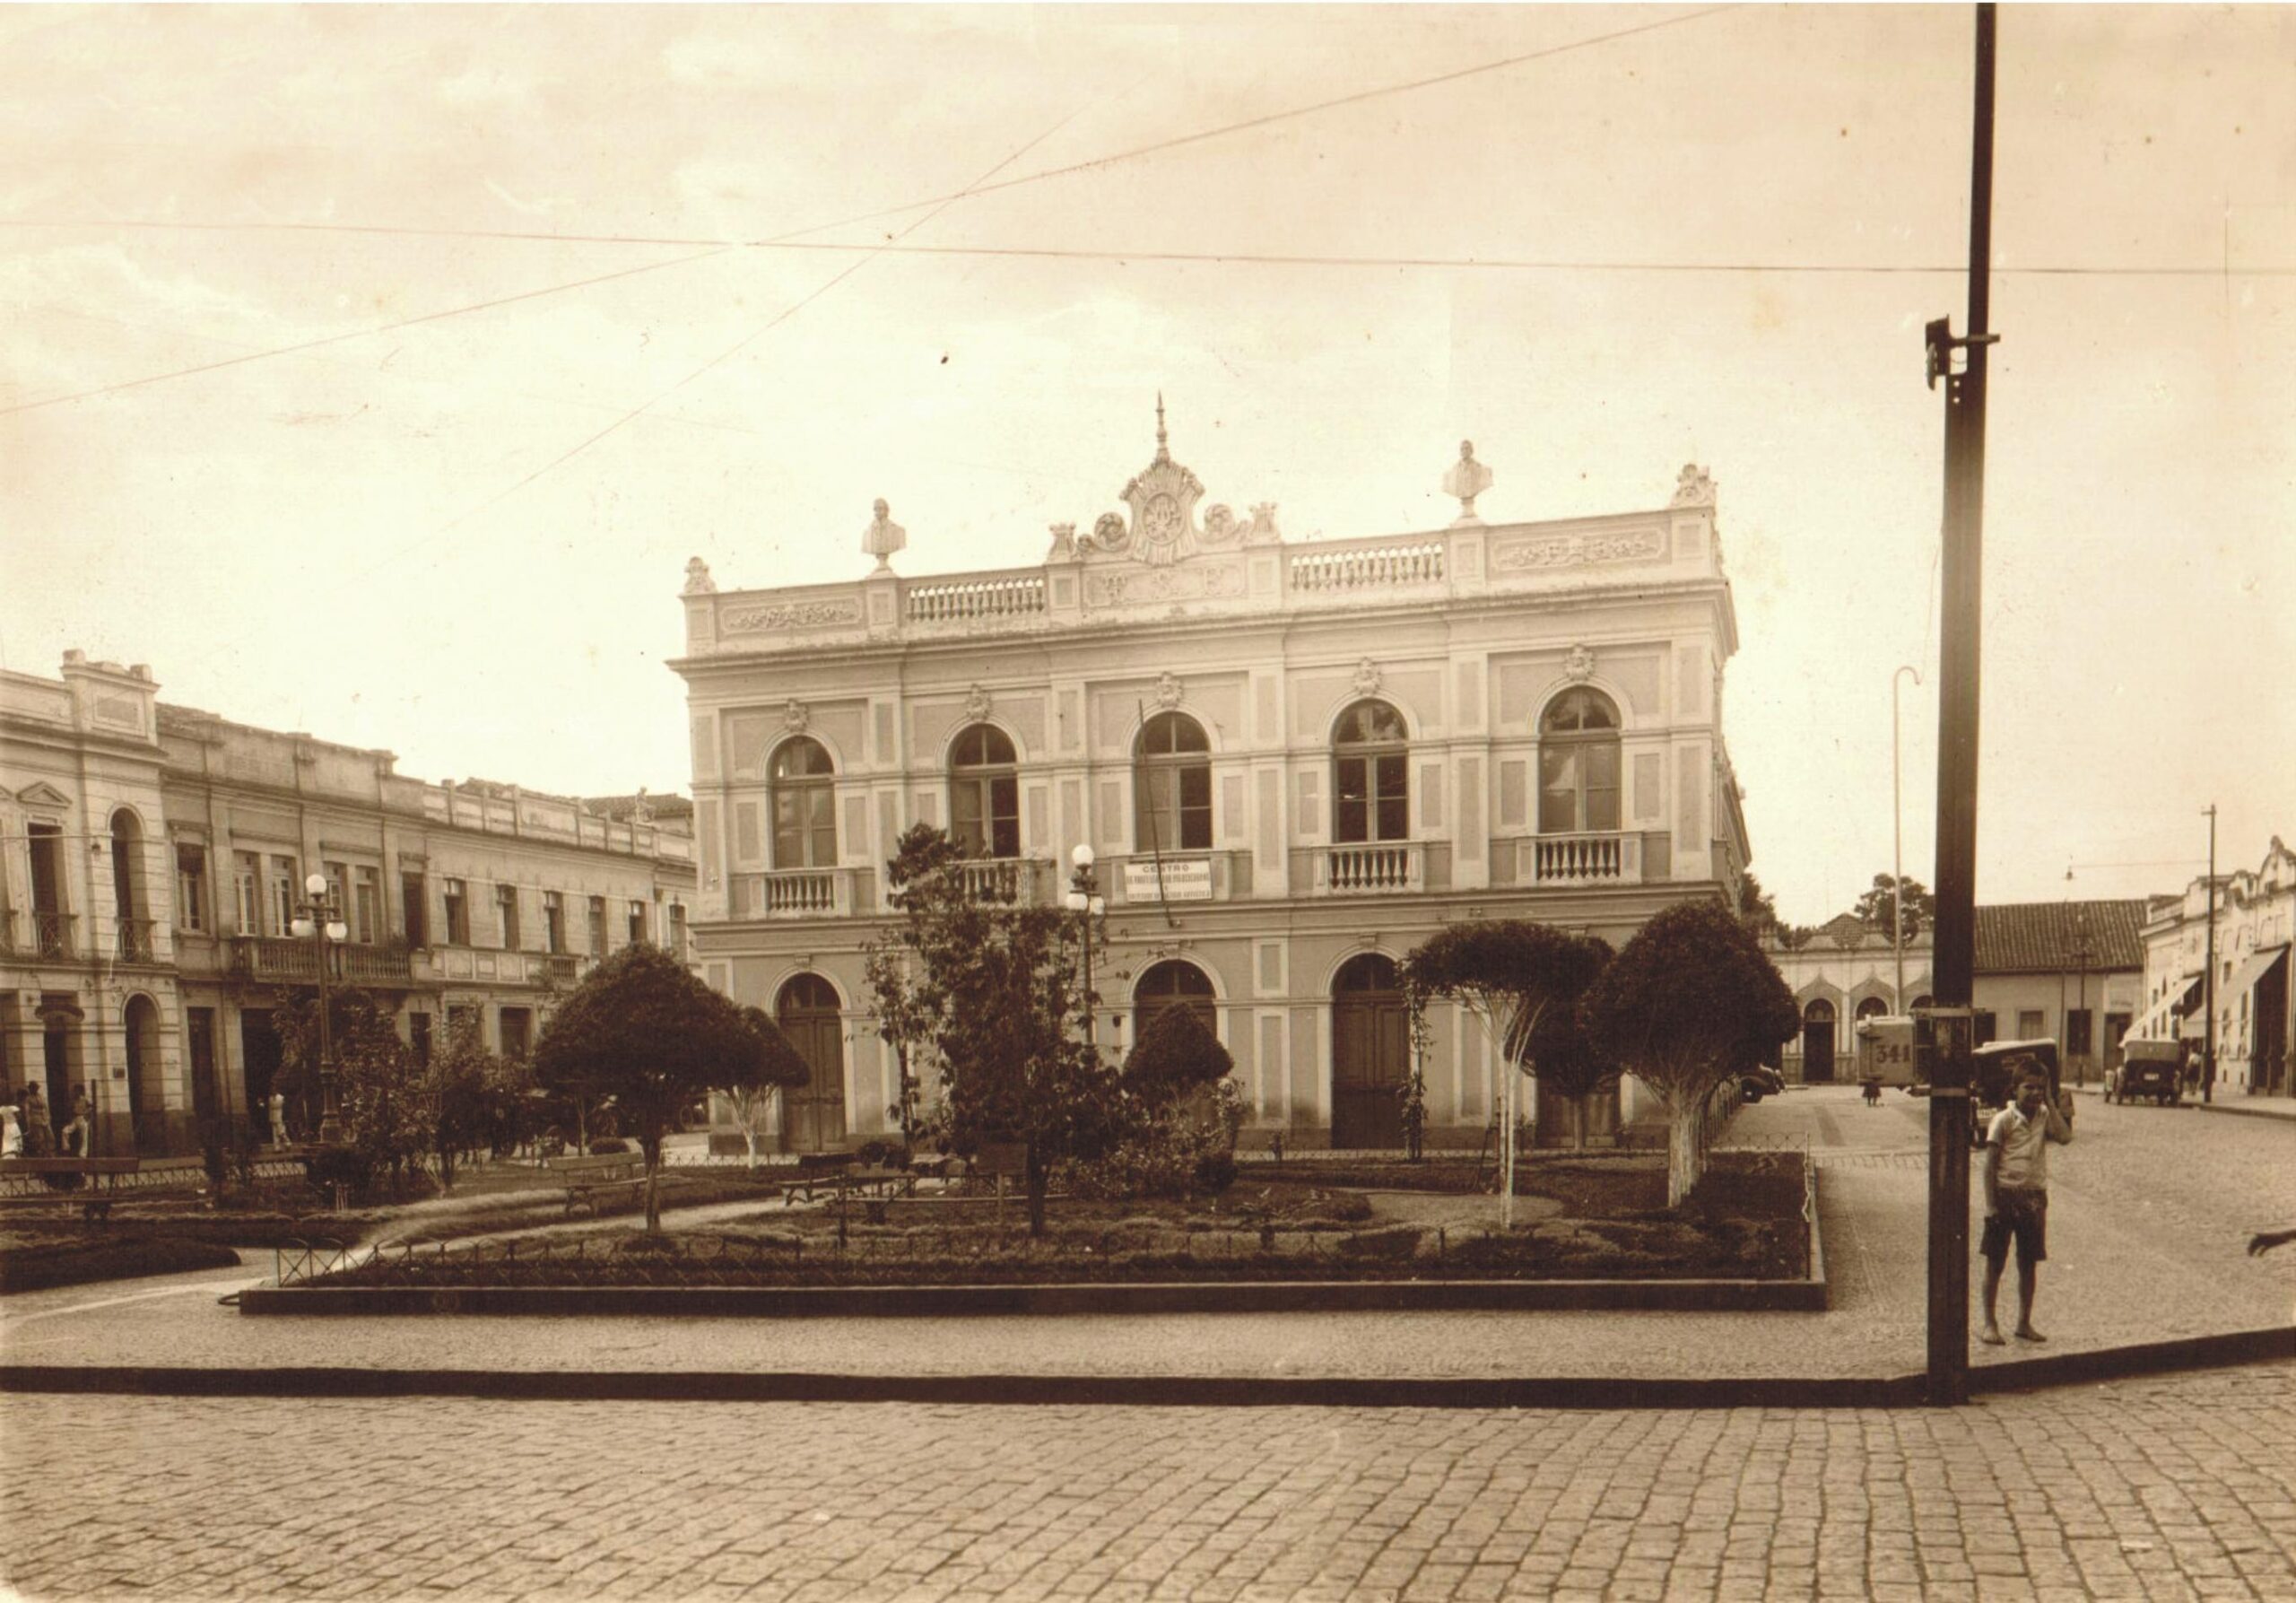 Instituto Histórico e Geográfico de Piracicaba